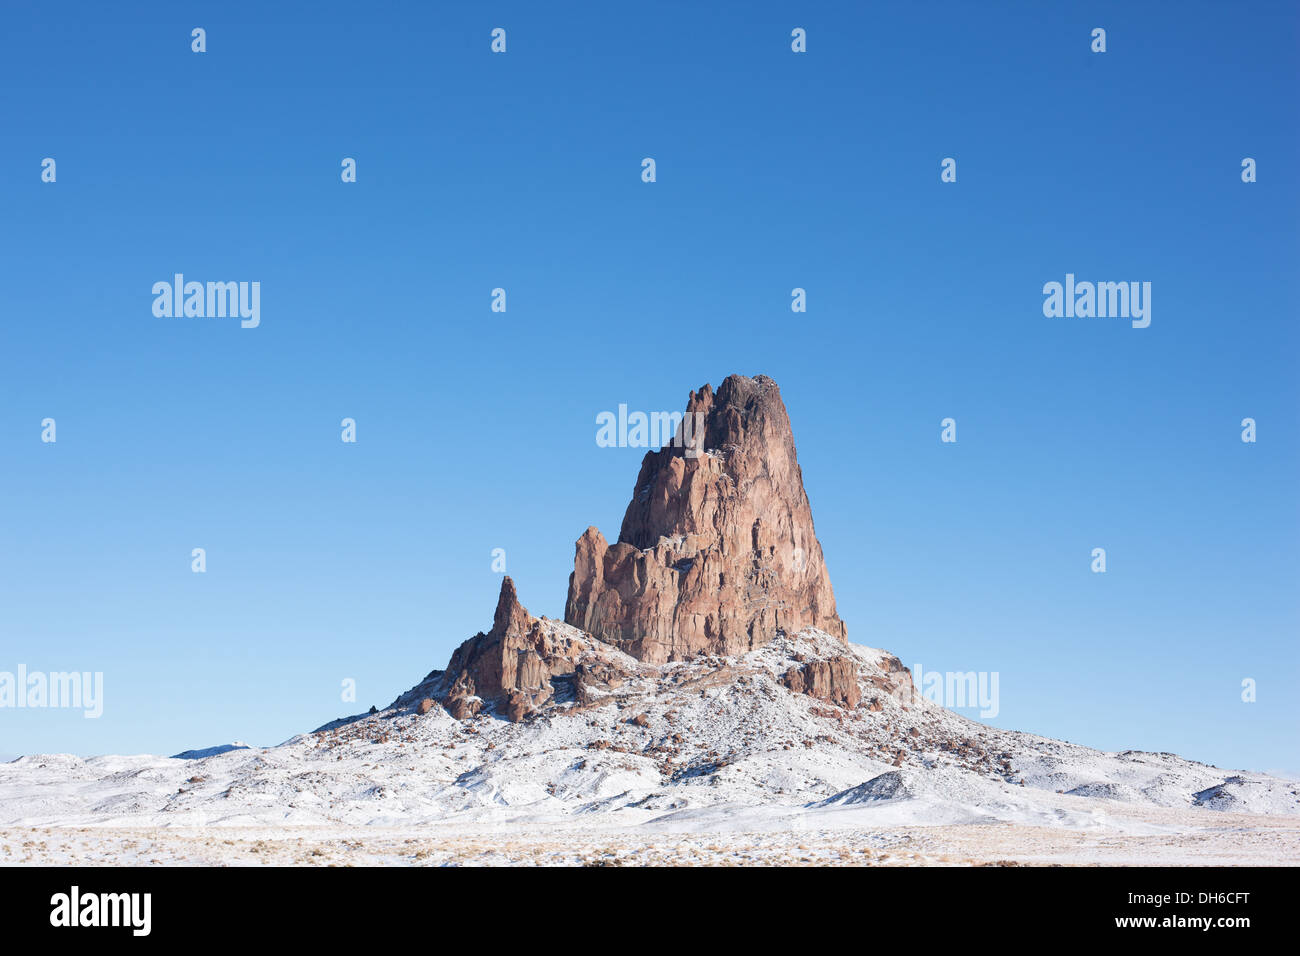 Collo vulcanico isolato in inverno. El Capitan aka Agathla Peak a nord di Kayenta, in Navajo Land, Navajo County, Arizona, Stati Uniti. Foto Stock